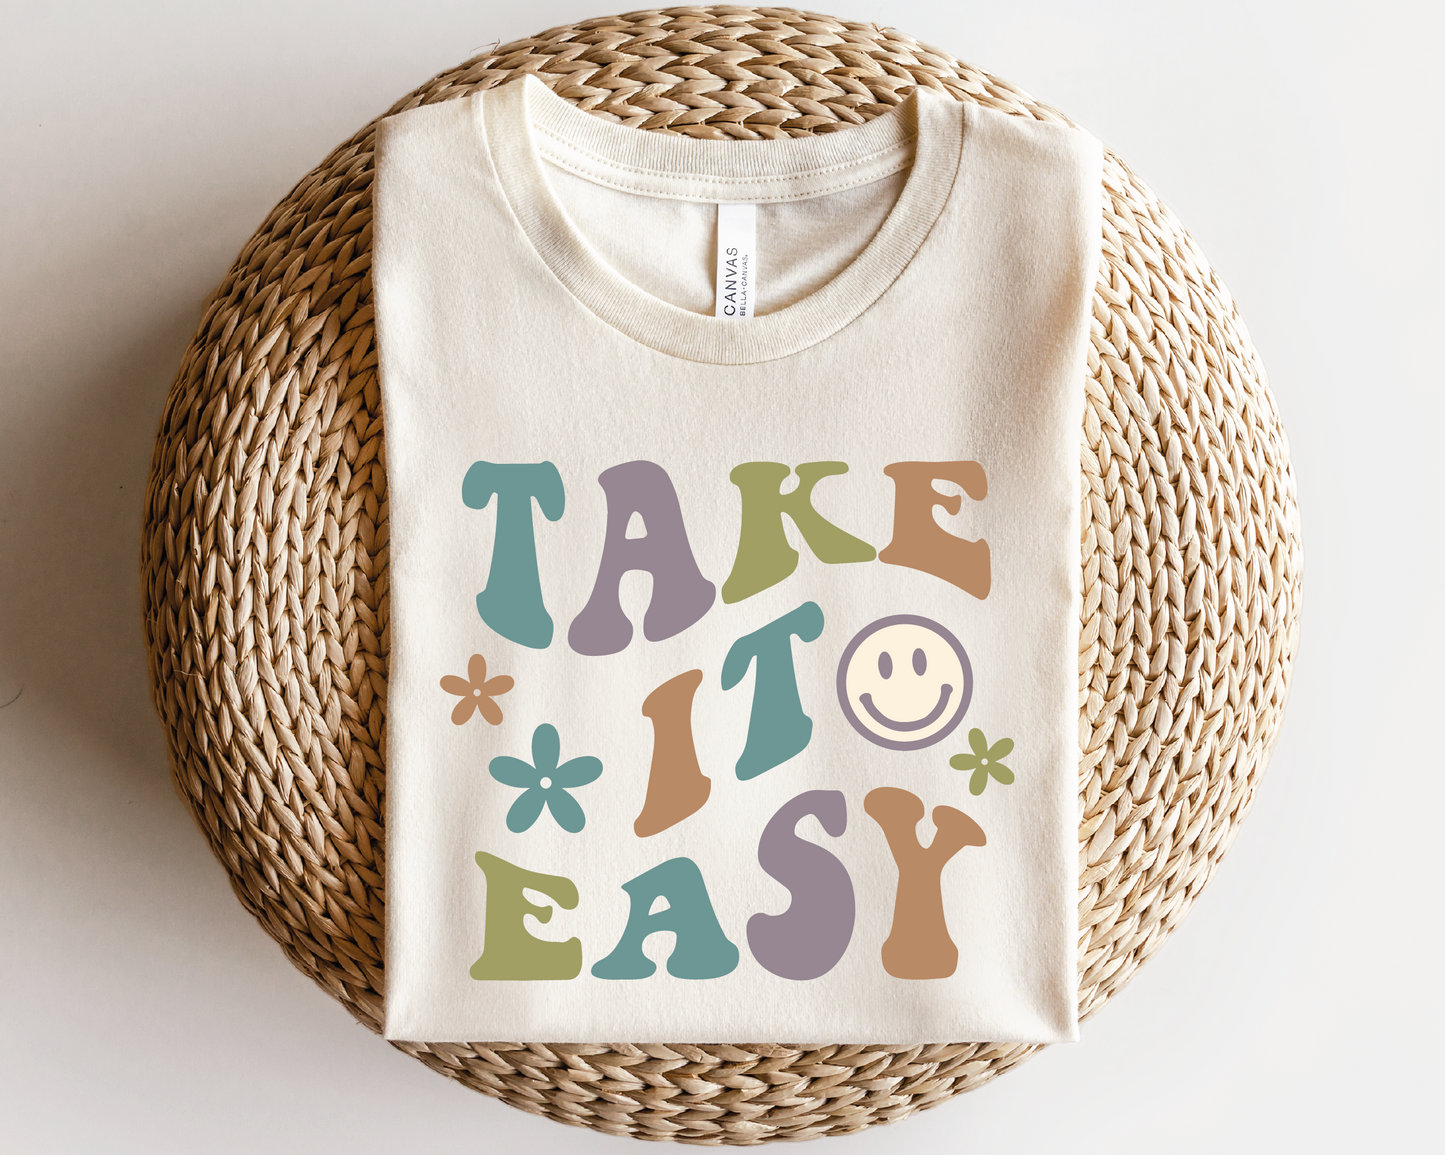 Take It Easy SVG PNG | Smile Face Sublimation | Inspirational | Retro Vintage T shirt Design